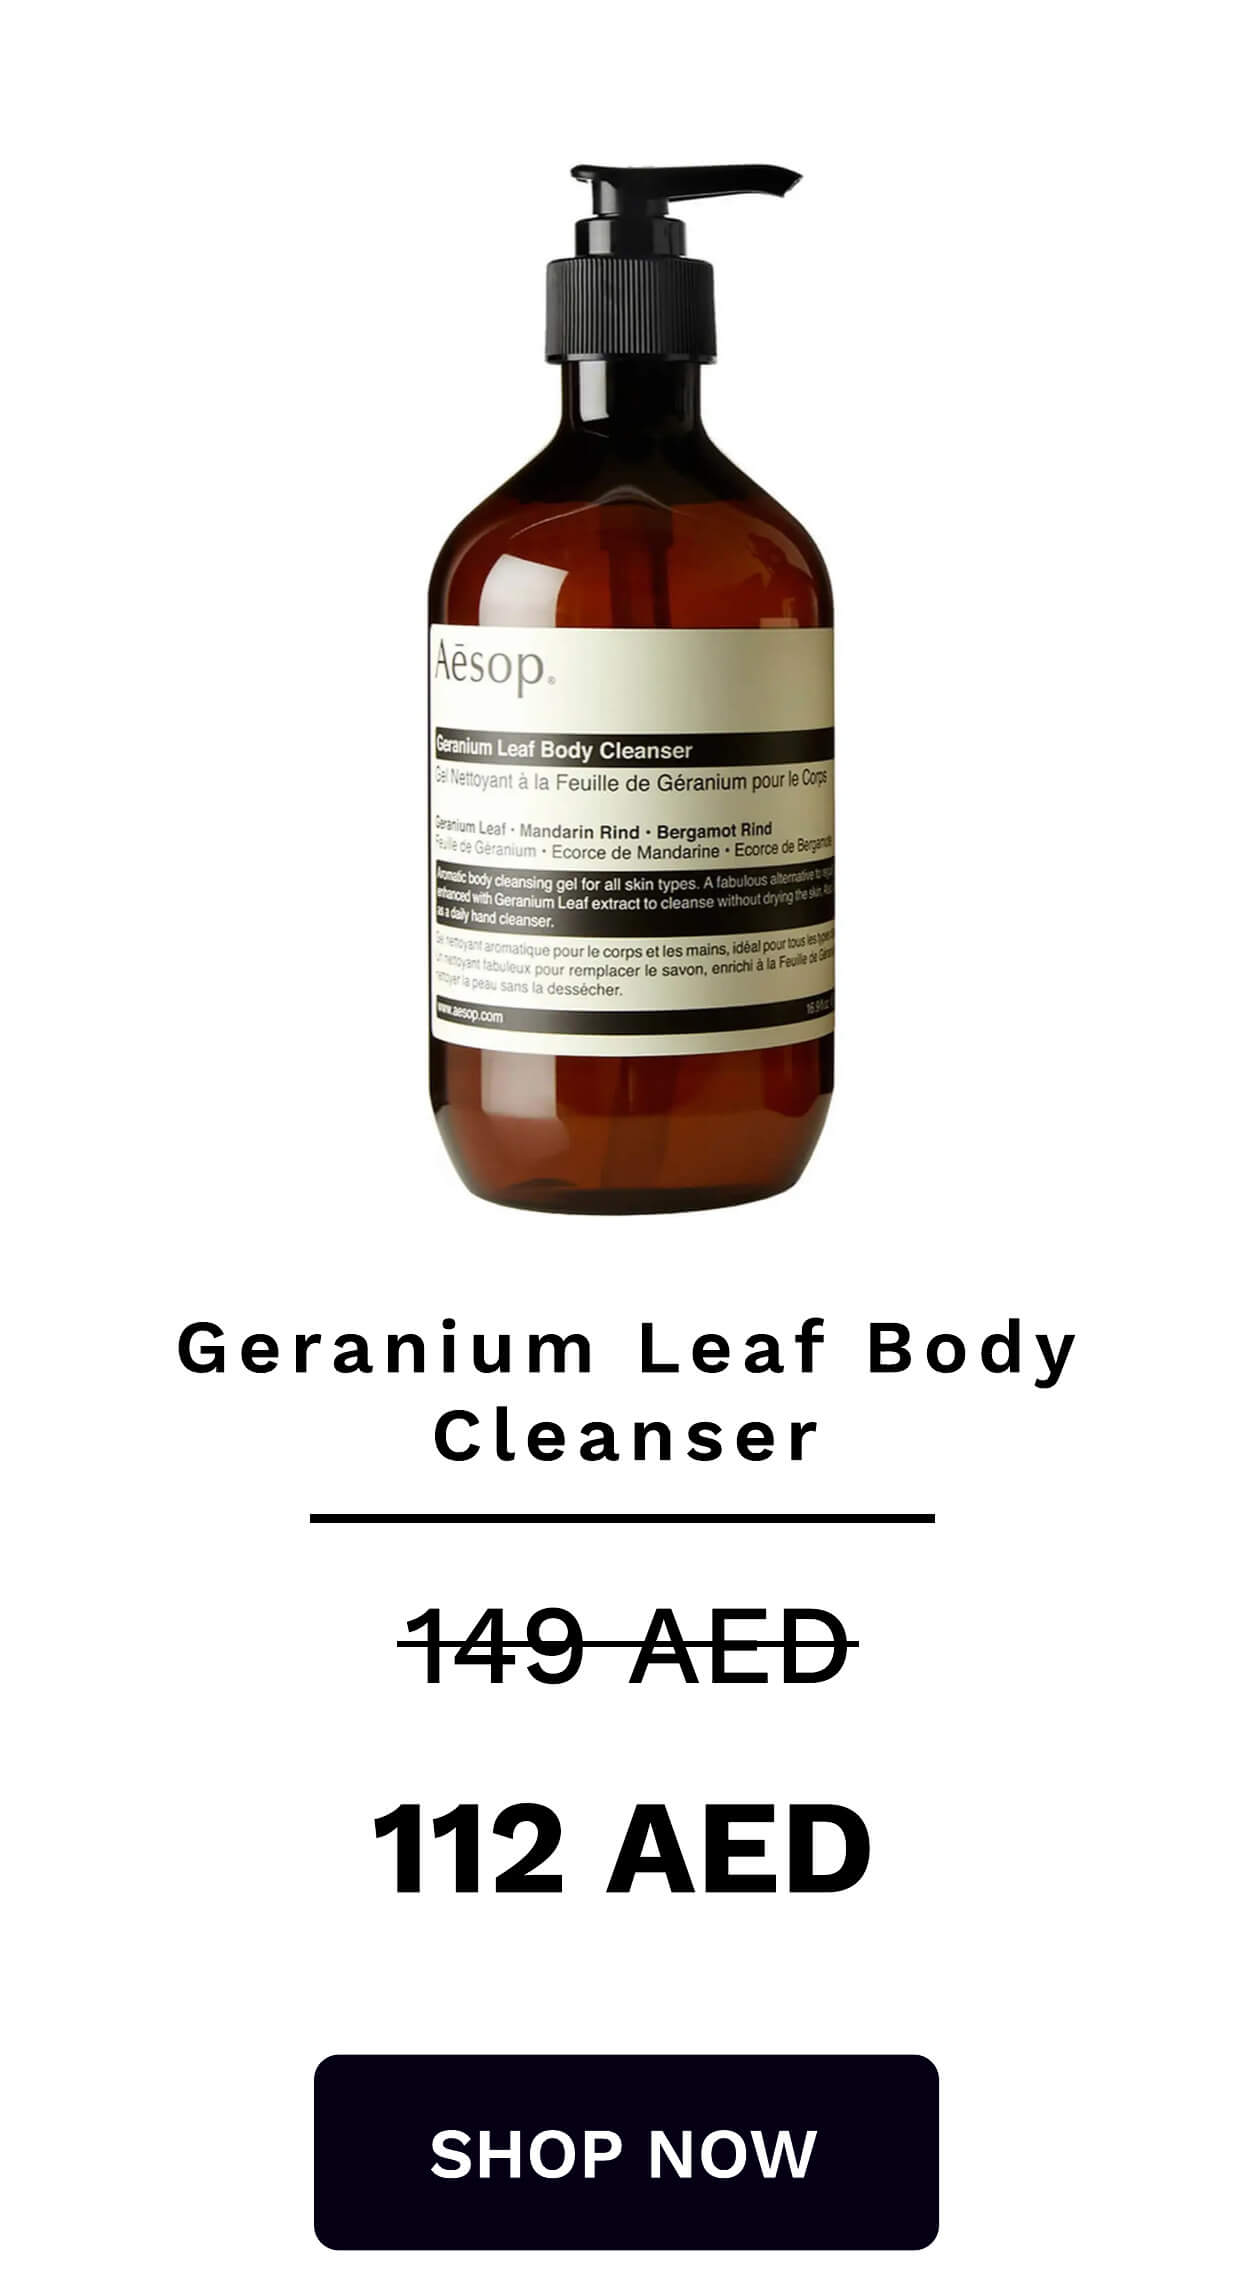  Geranium Leaf Body Cleanser HI-AED 112 AED SHOP NOW 